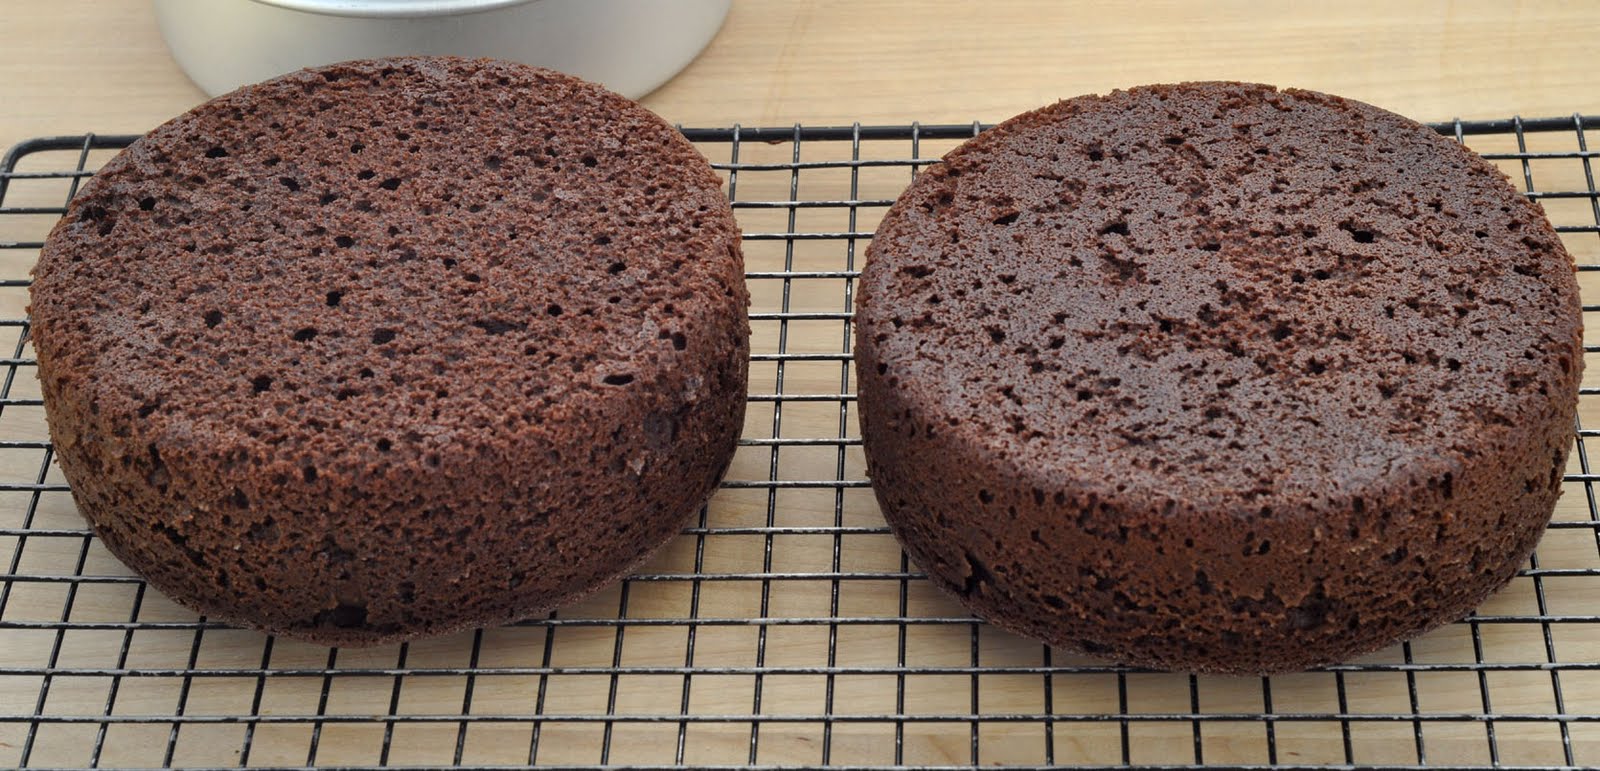 beautiful chocolate cakes round chocolate cakes using my rich chocolate cake recipe